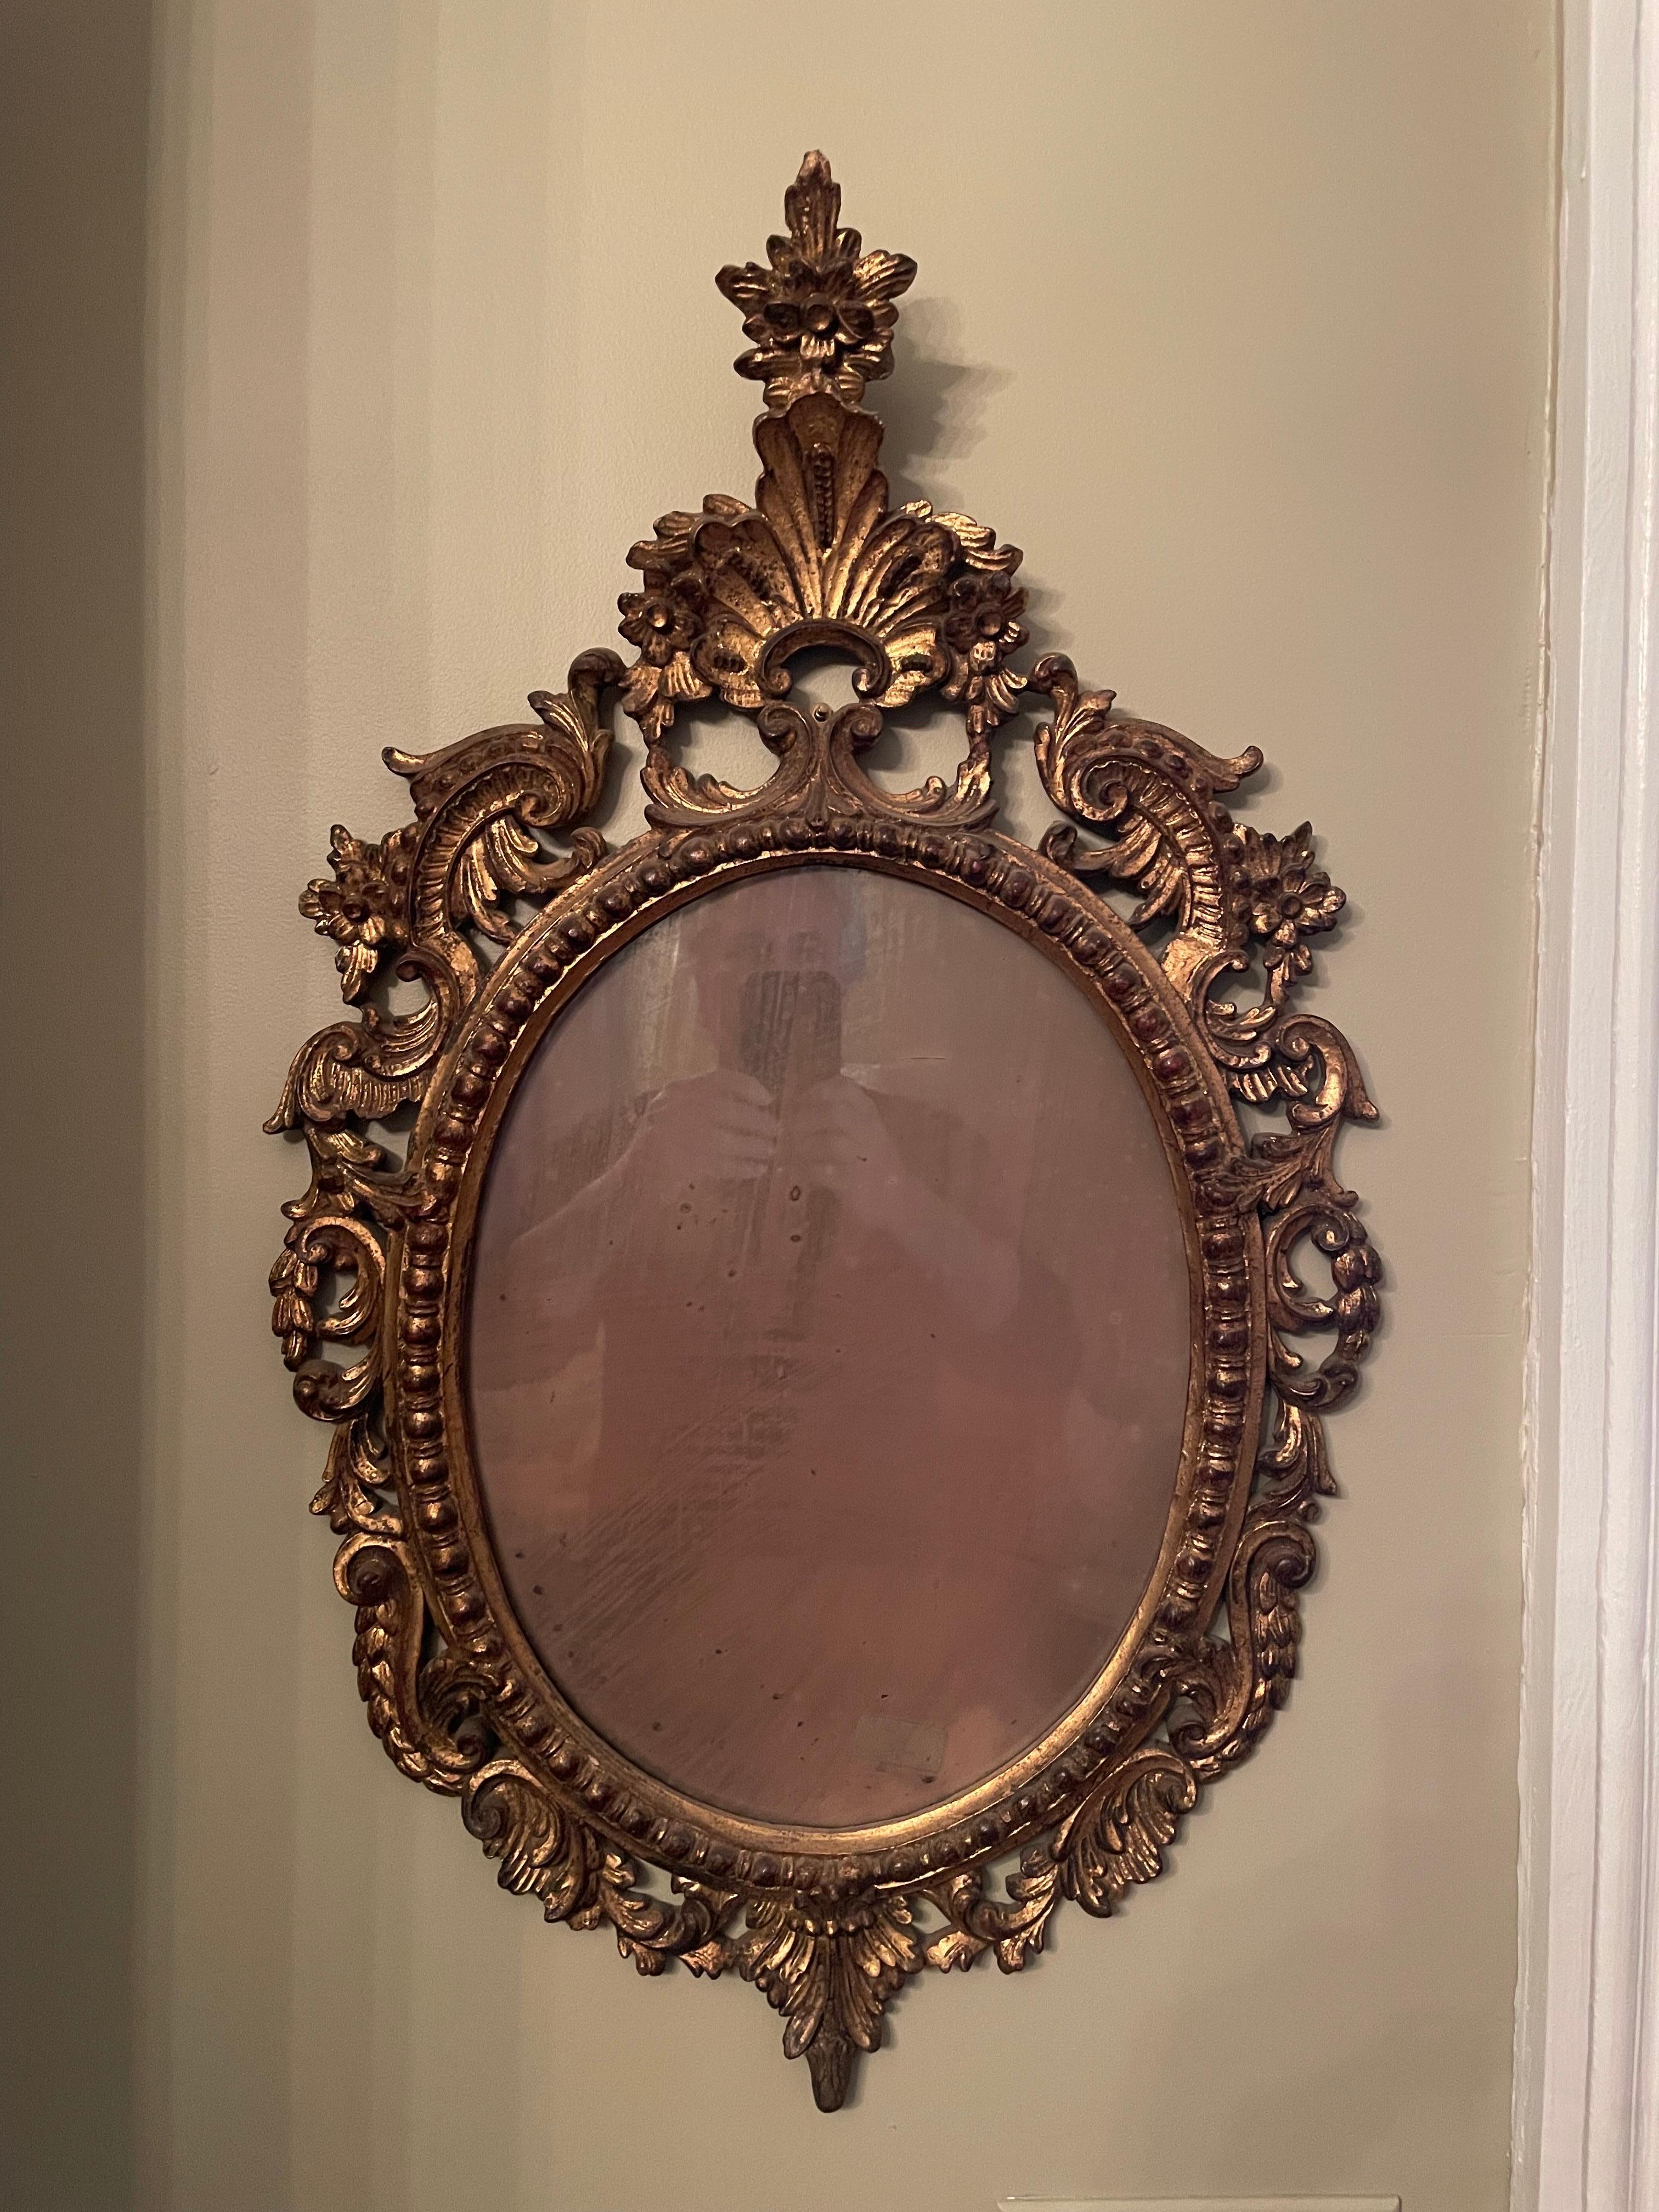 Große antike geschnitzte Rokoko-Stil vergoldetem Holz italienischen Spiegel. Distressed original Spiegelglas wie in Fotos gezeigt. Guter Gesamtzustand. Maße: 30